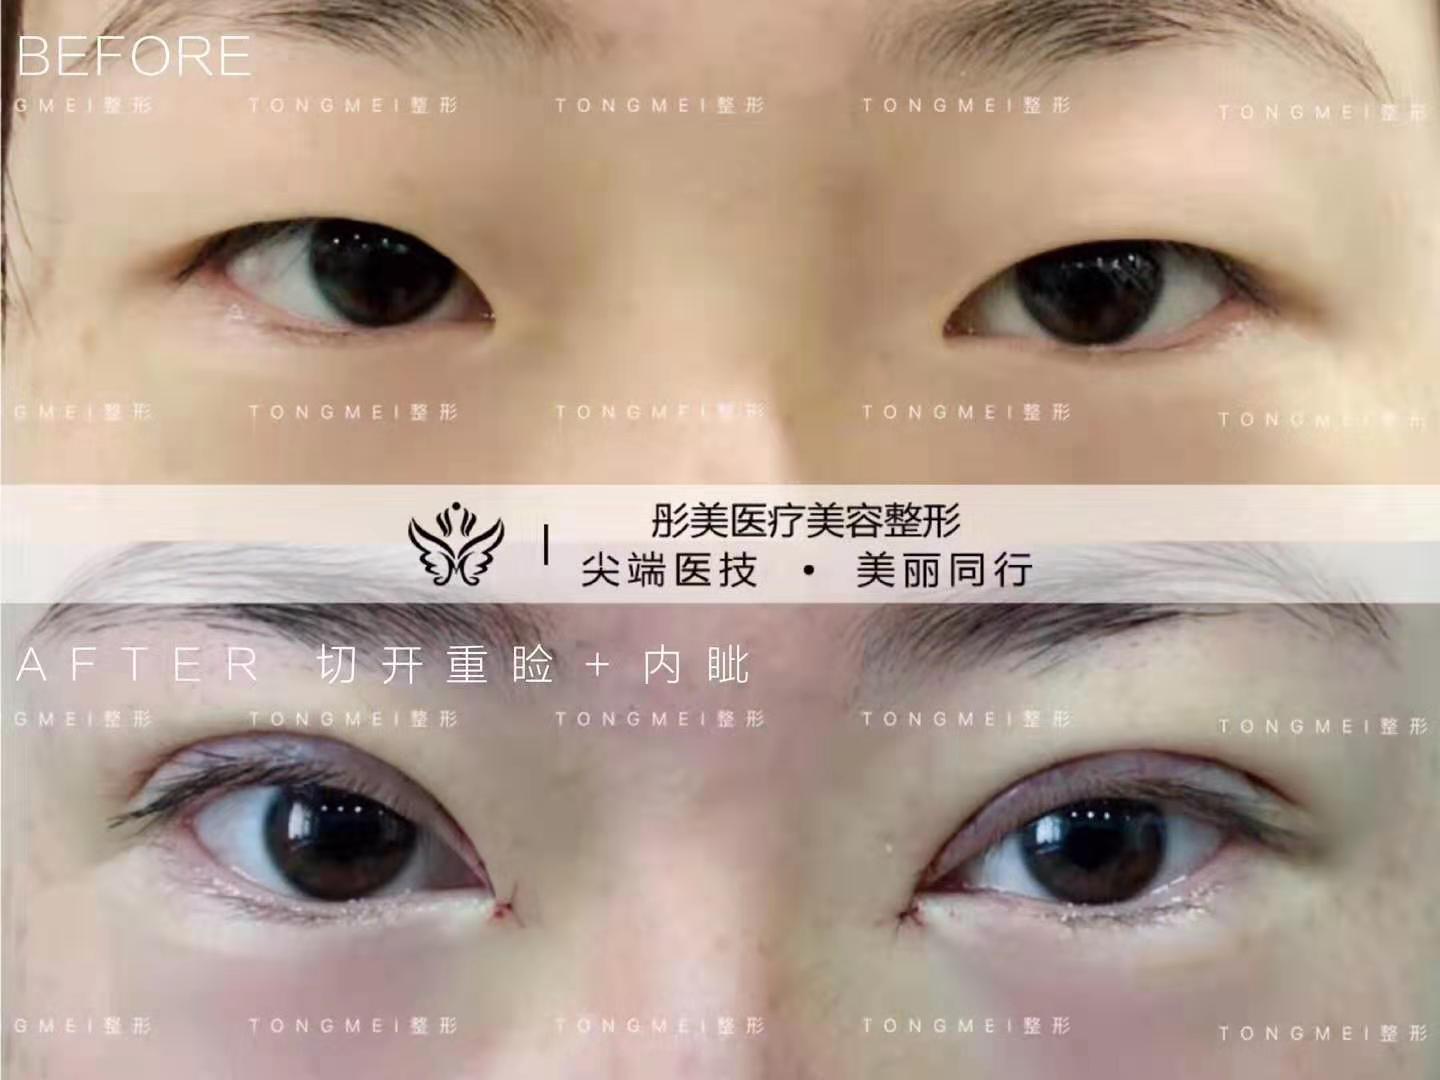 北京刘风卓割双眼皮和双眼皮修复案例效果图 刘风卓预约